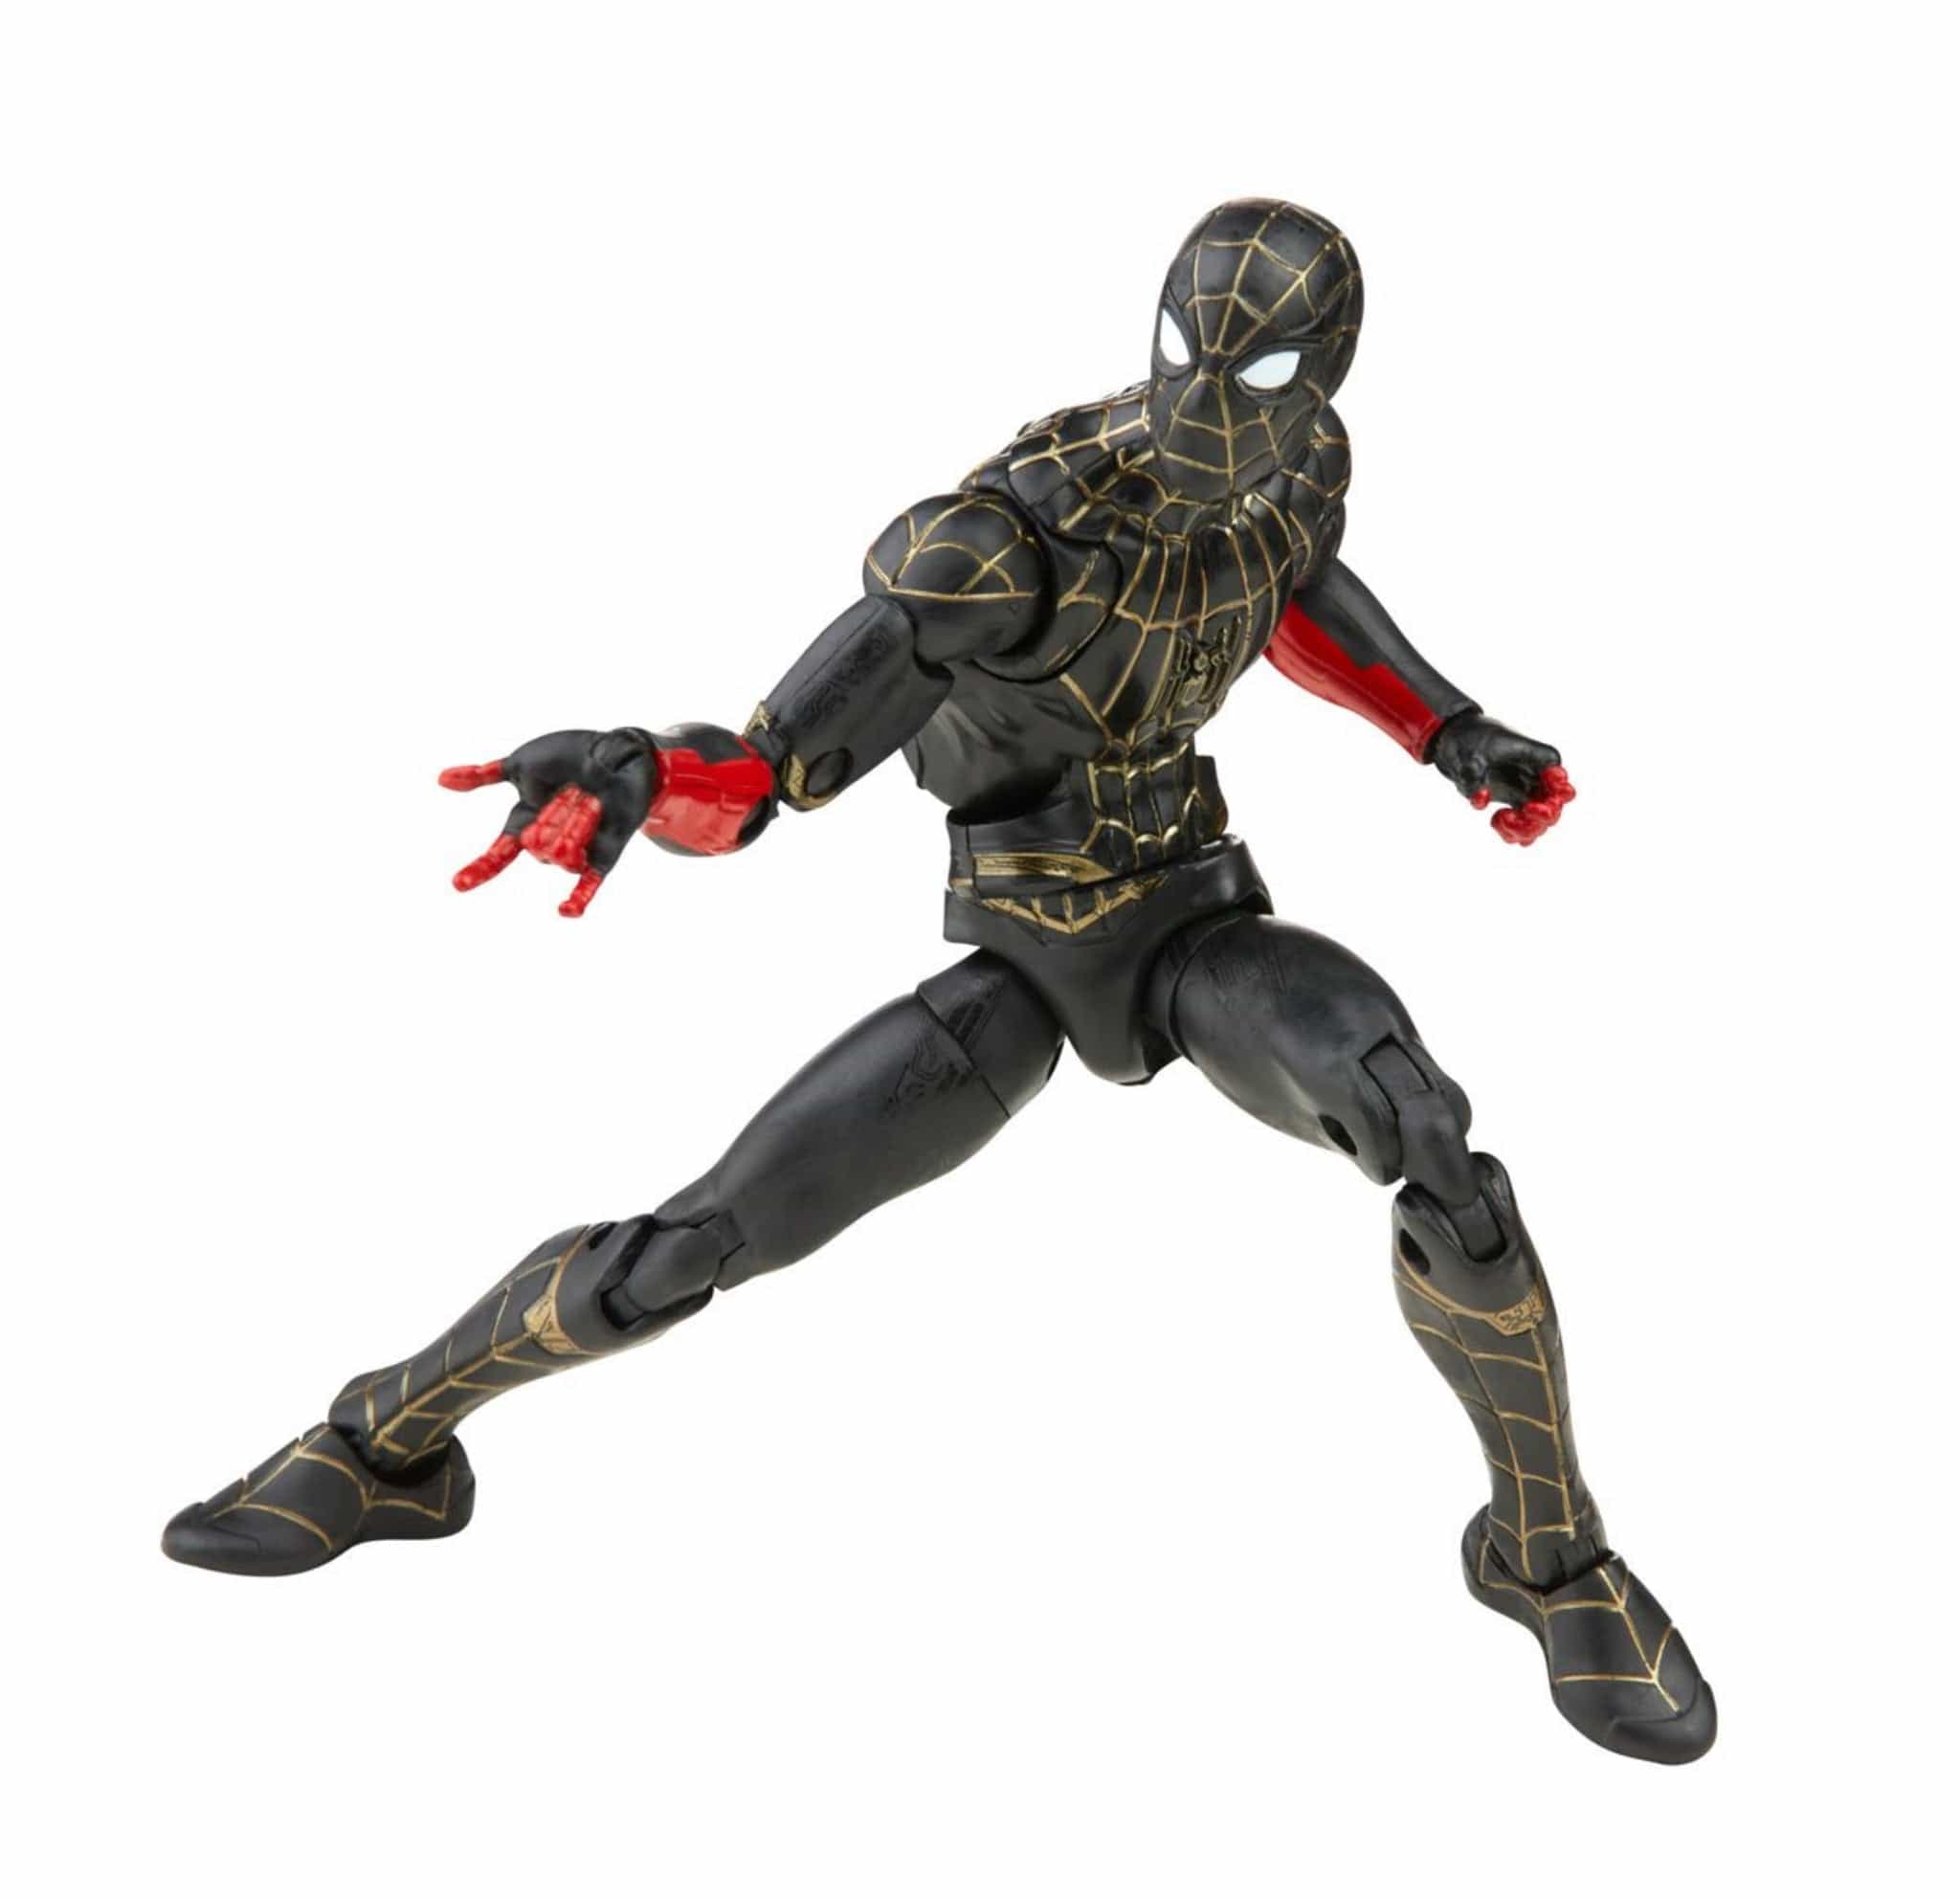 Spider-Man 3 Marvel Legends Black and Gold Spider-Man 6-Inch Action Figure